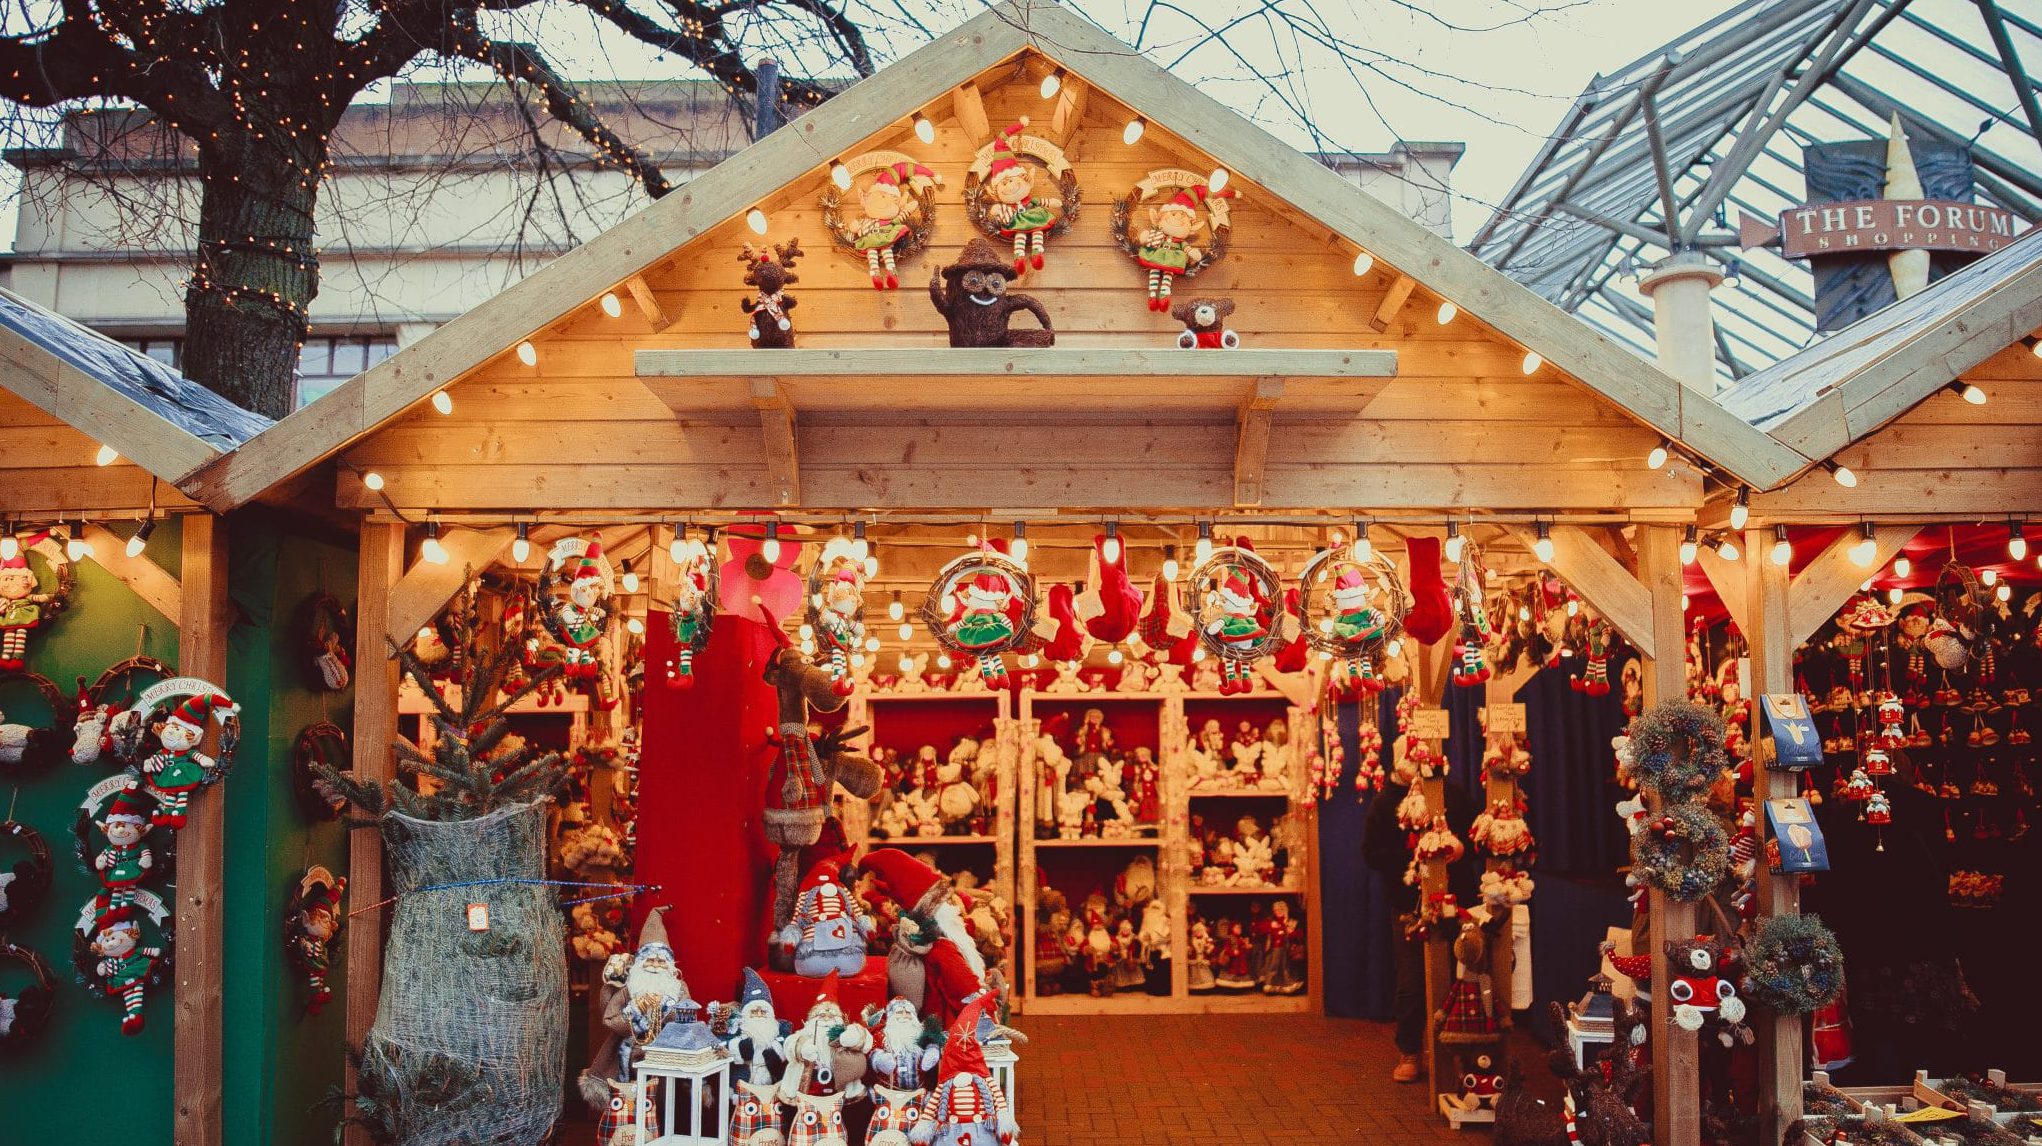 Chalet en bois typique des marchés de Noël